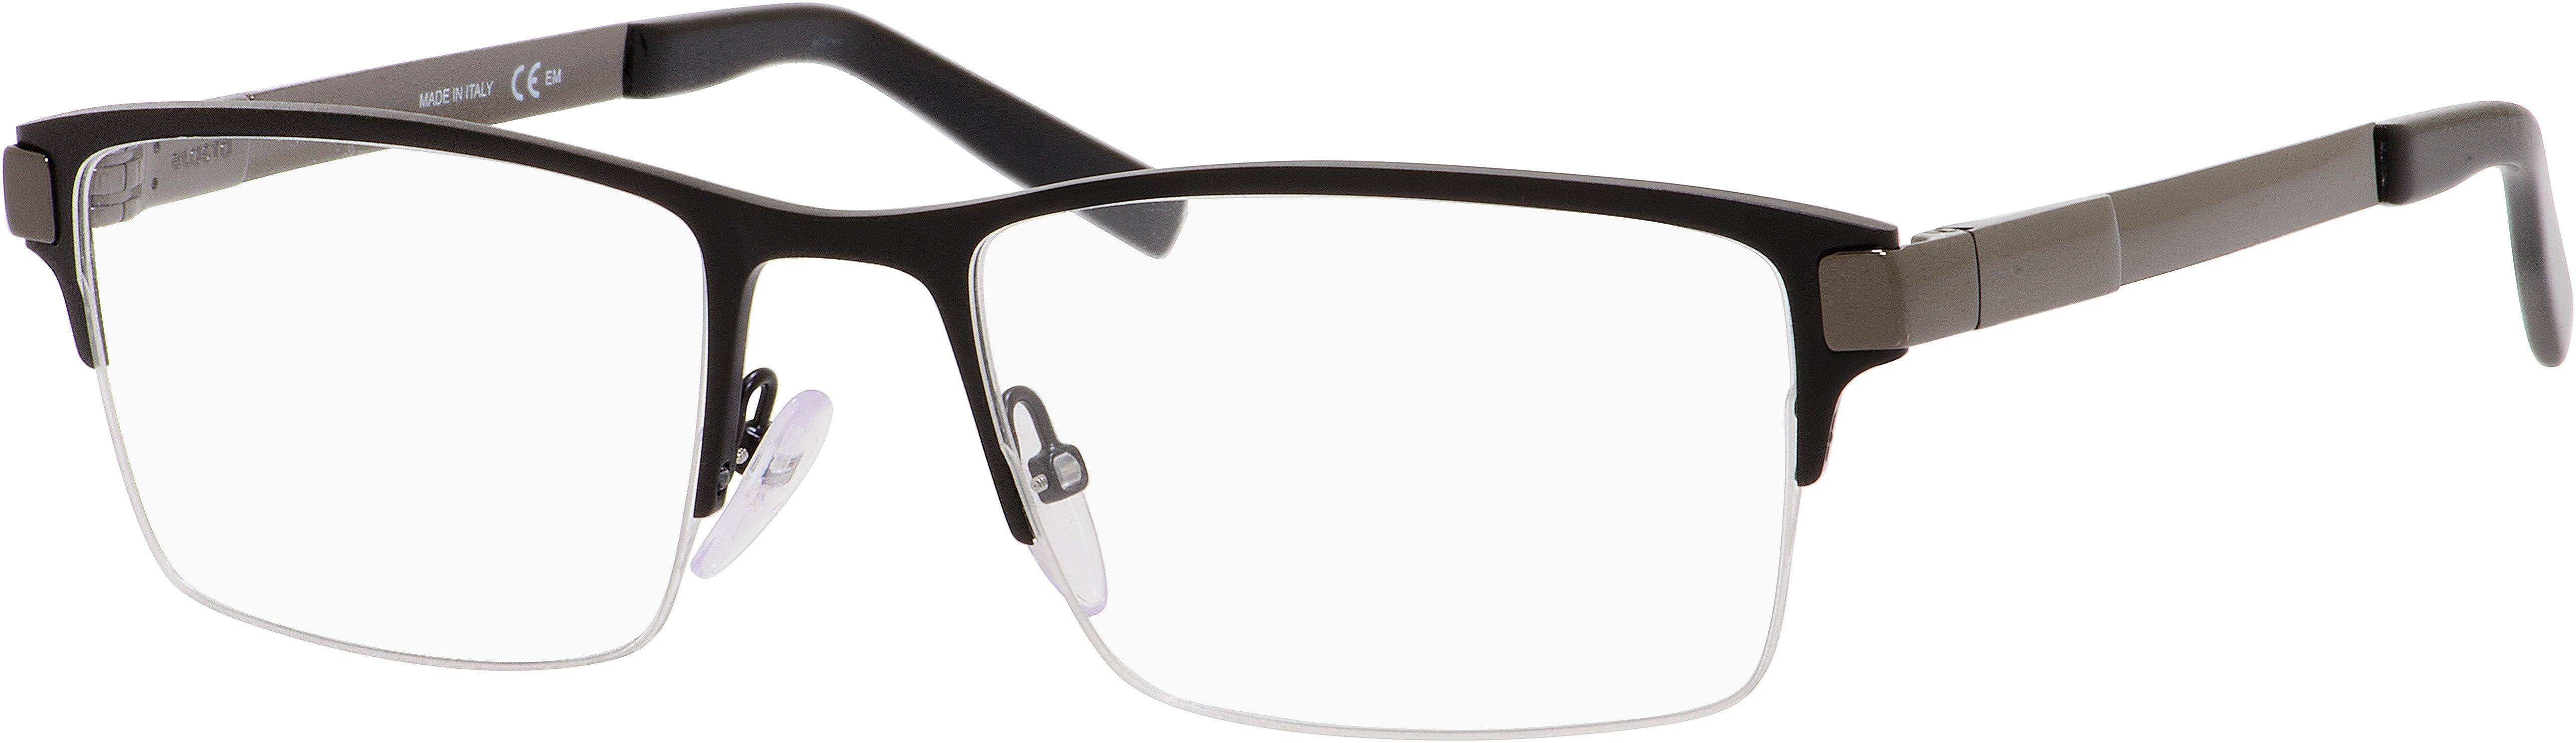  Elasta 3108 Rectangular Eyeglasses 0TI7-0TI7  Ruthenium Matte Black (00 Demo Lens)